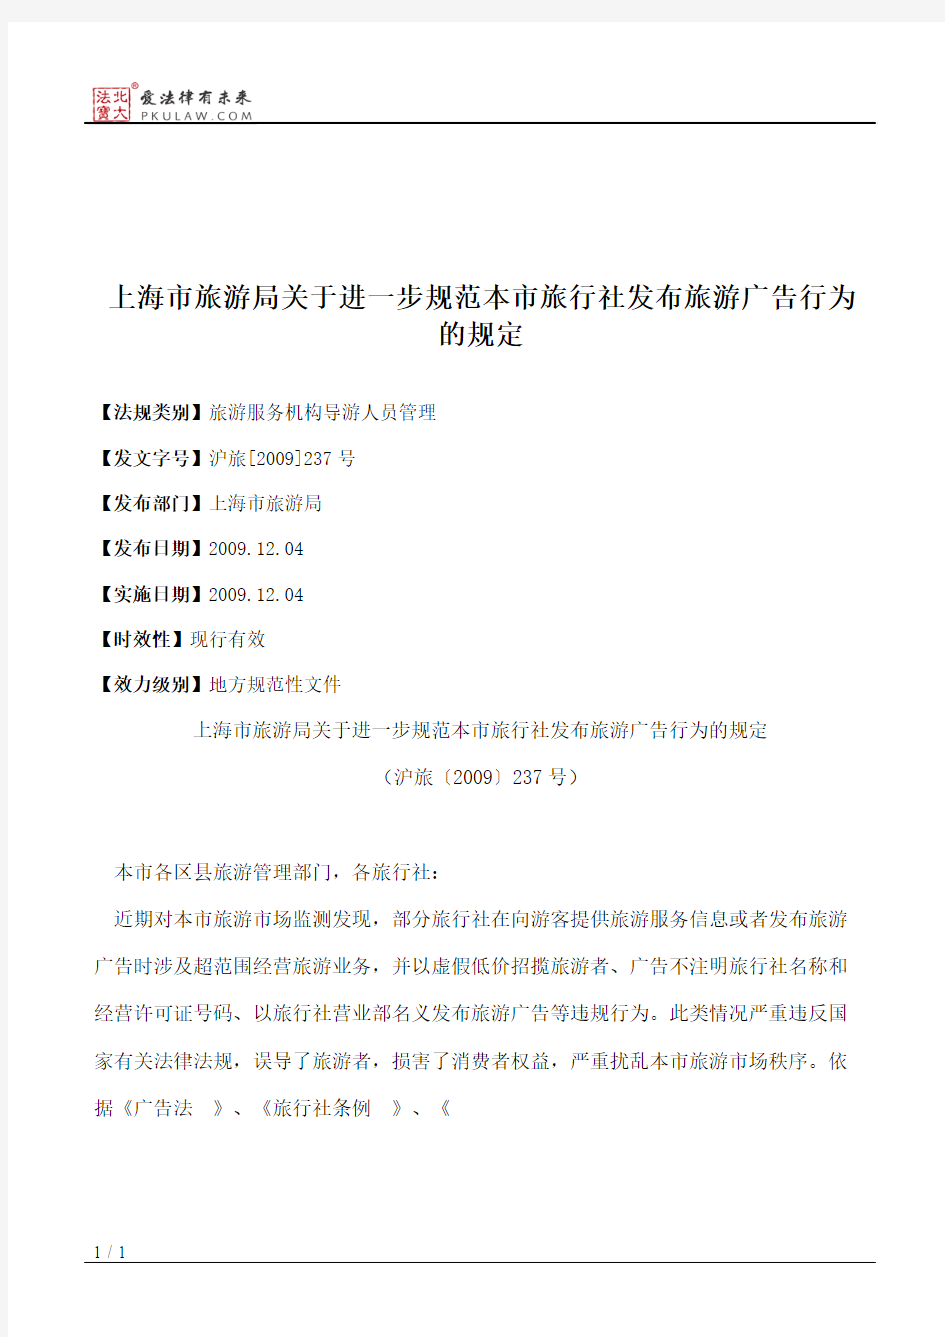 上海市旅游局关于进一步规范本市旅行社发布旅游广告行为的规定